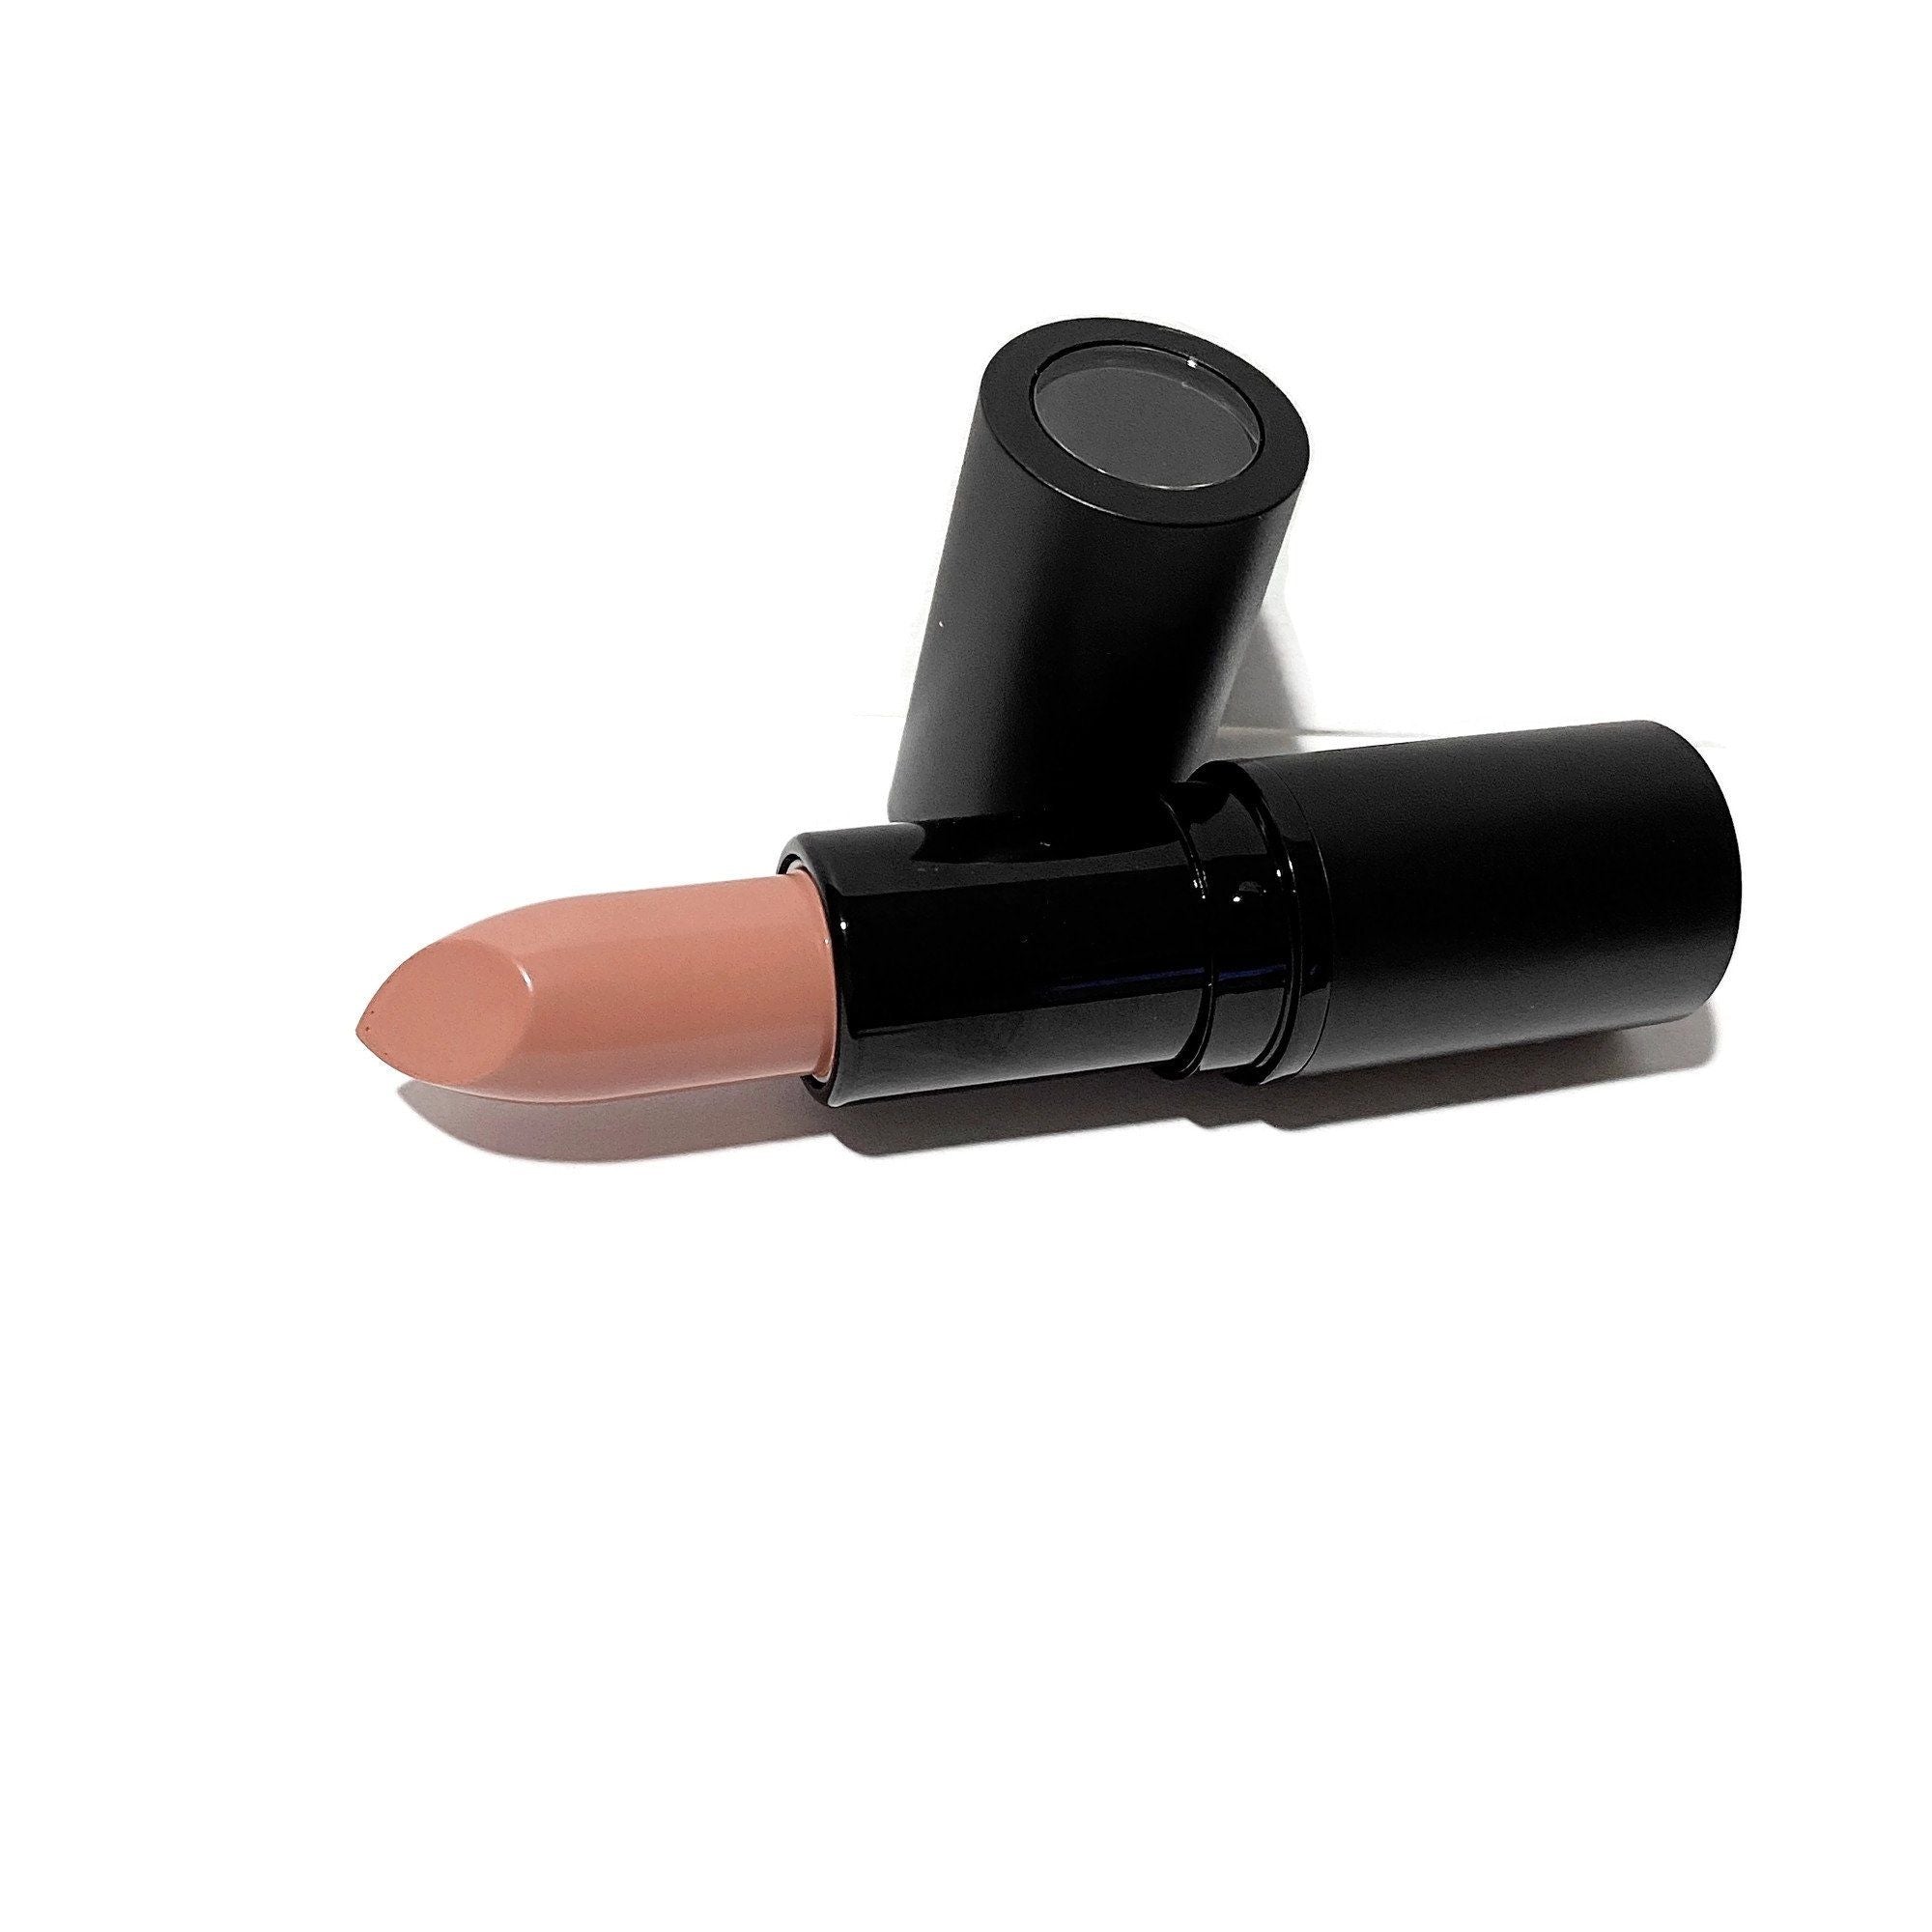 Shea Butter Lipstick - Naked Peach